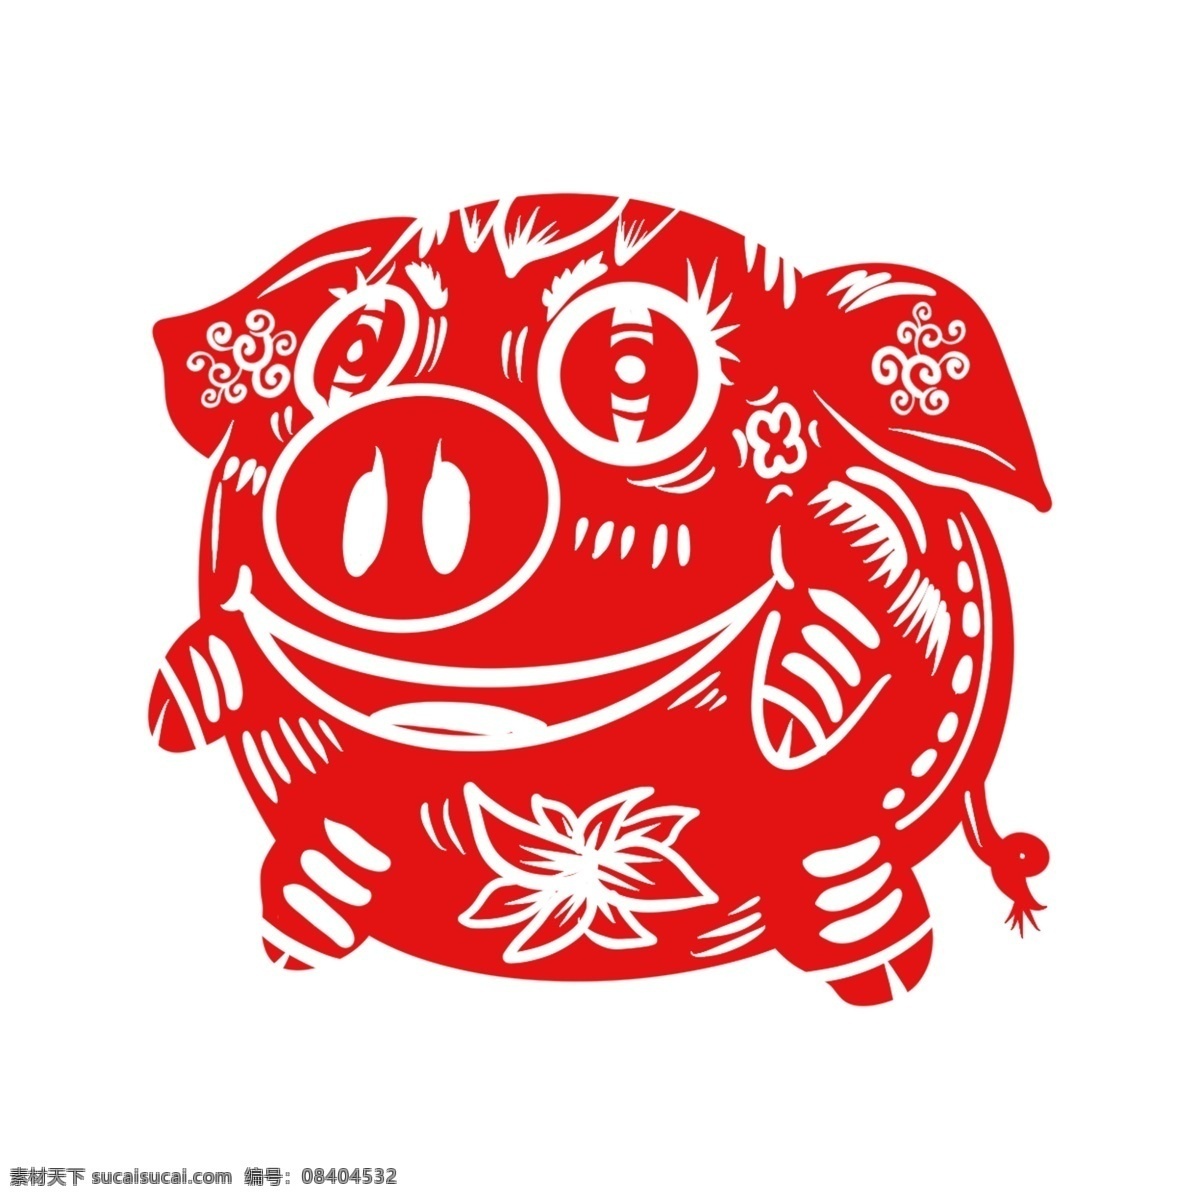 可爱 剪纸 过新年 春节 除夕 2019 新年 手绘 卡通 猪 2019年 猪年 红色剪纸猪